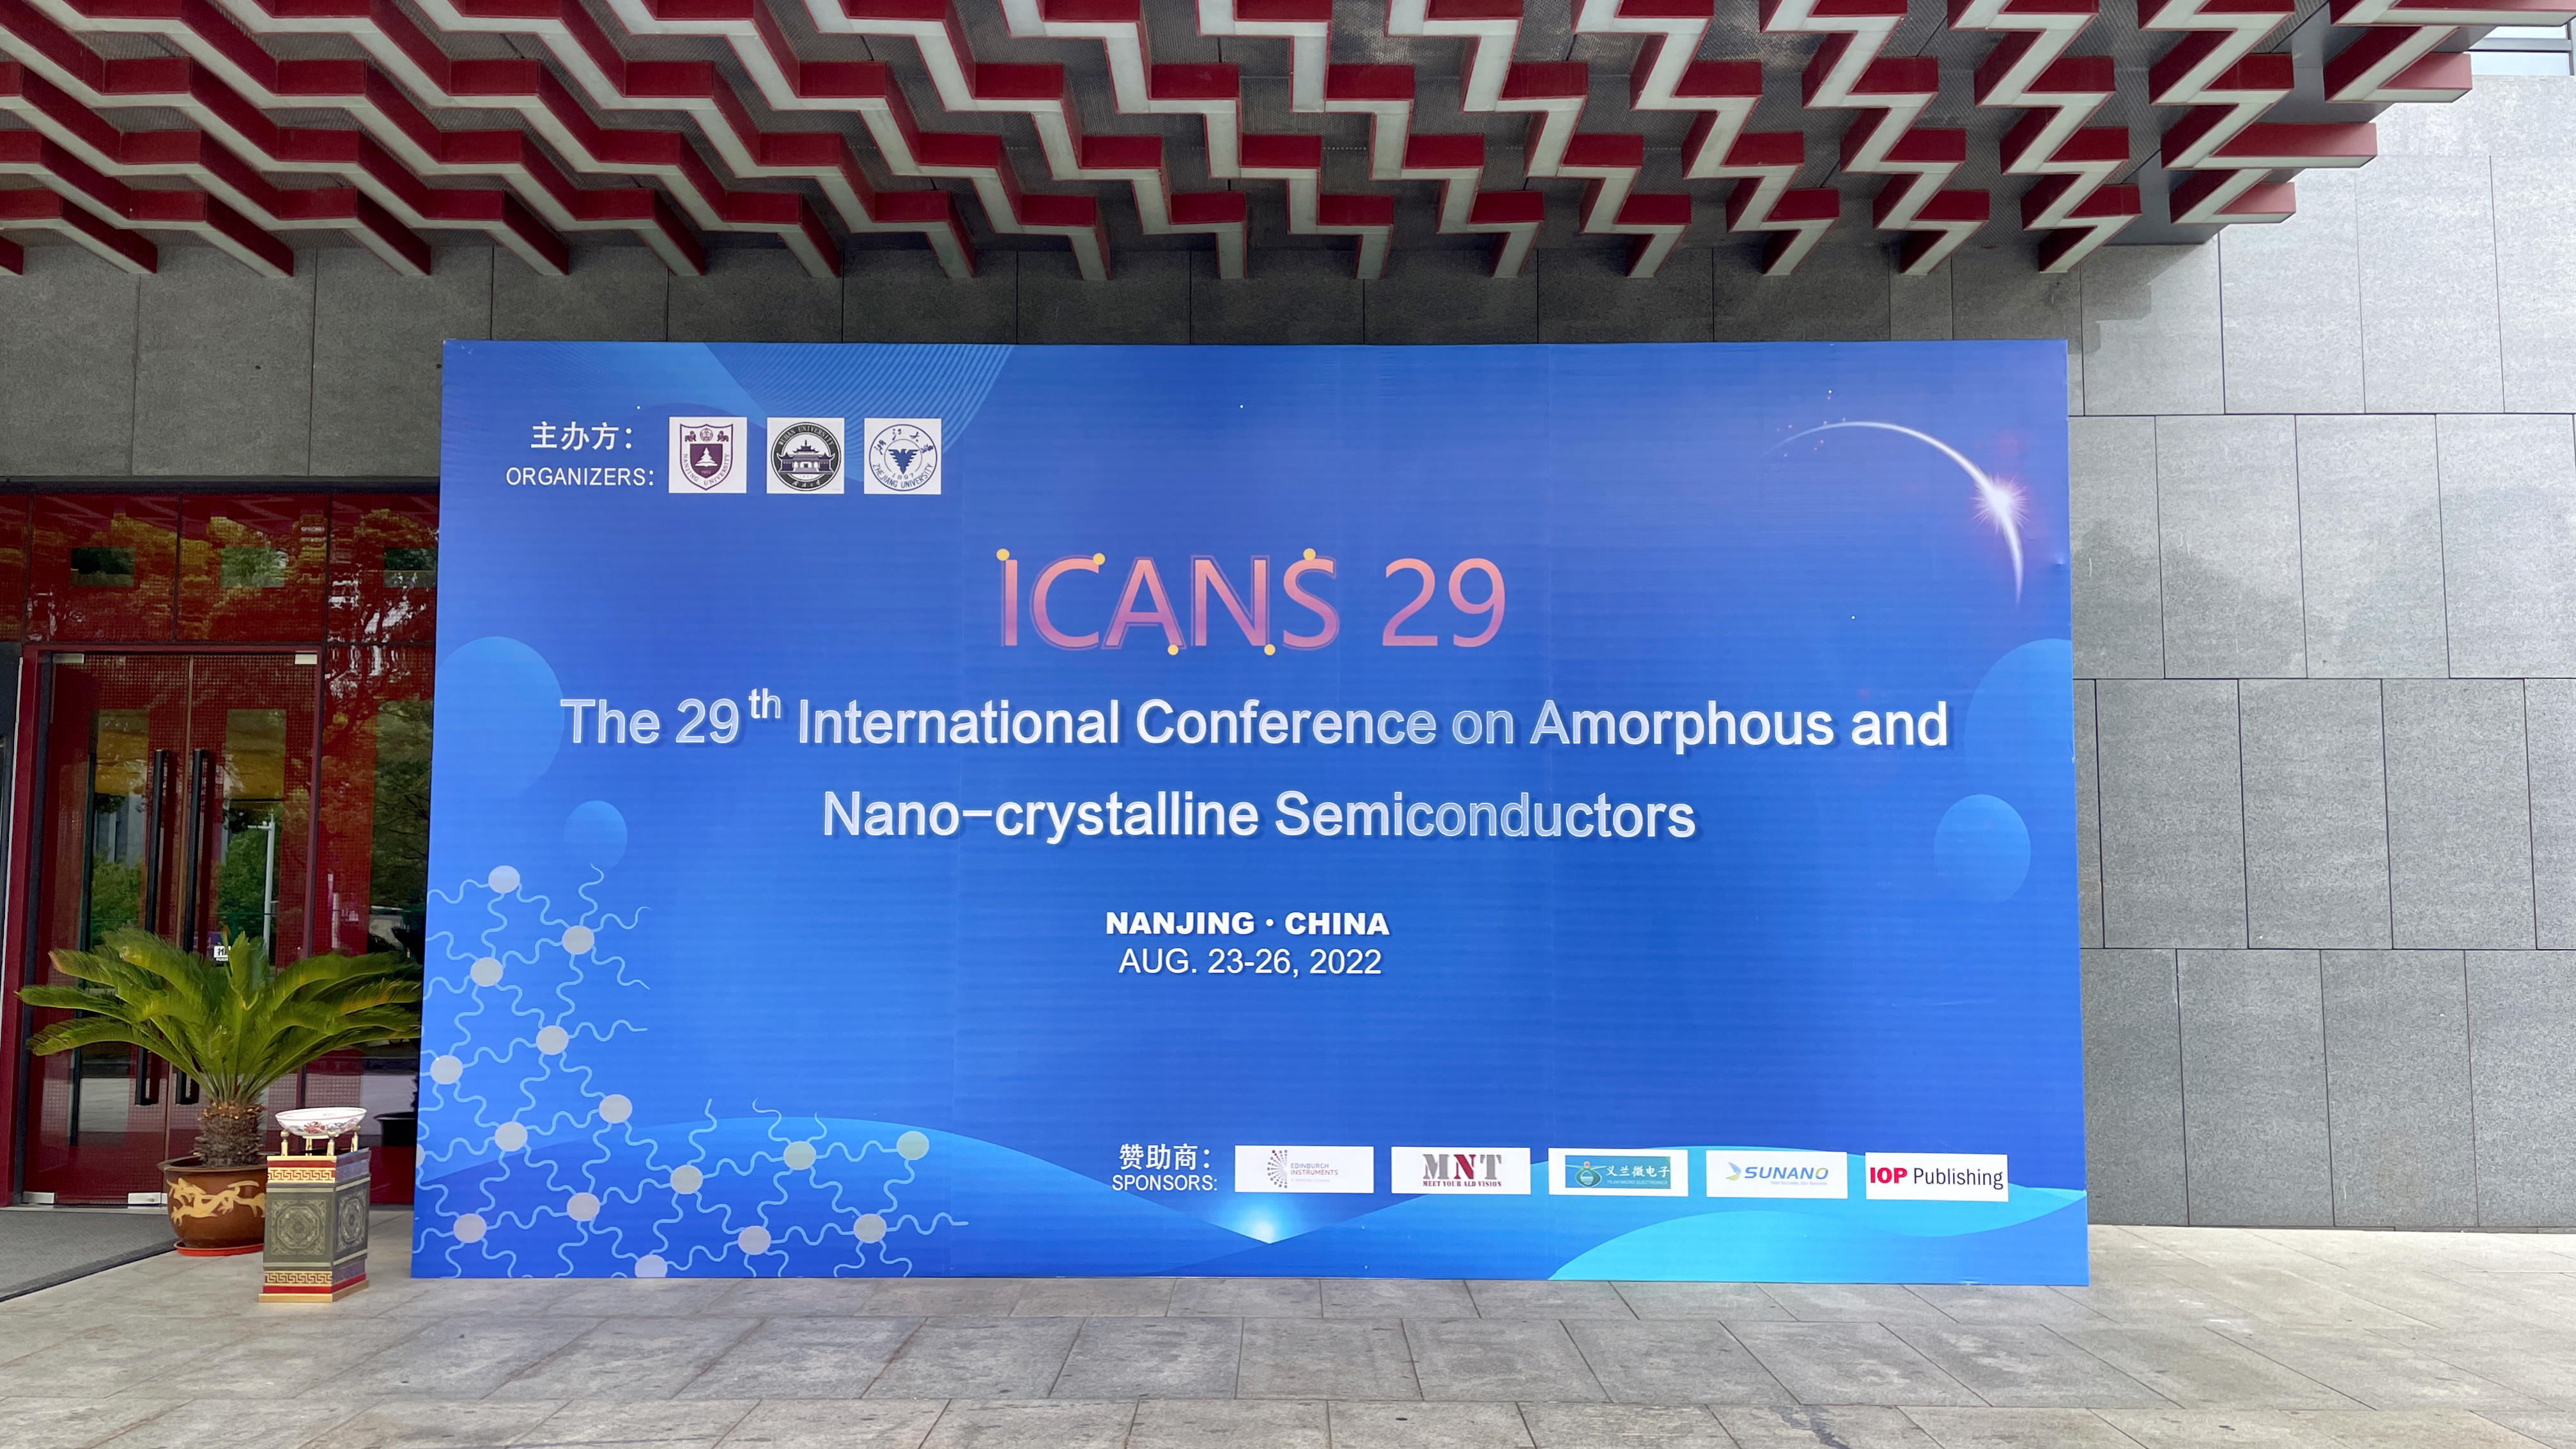 迈纳德受邀参加ICANS 29 非晶和纳米晶半导体国际会议